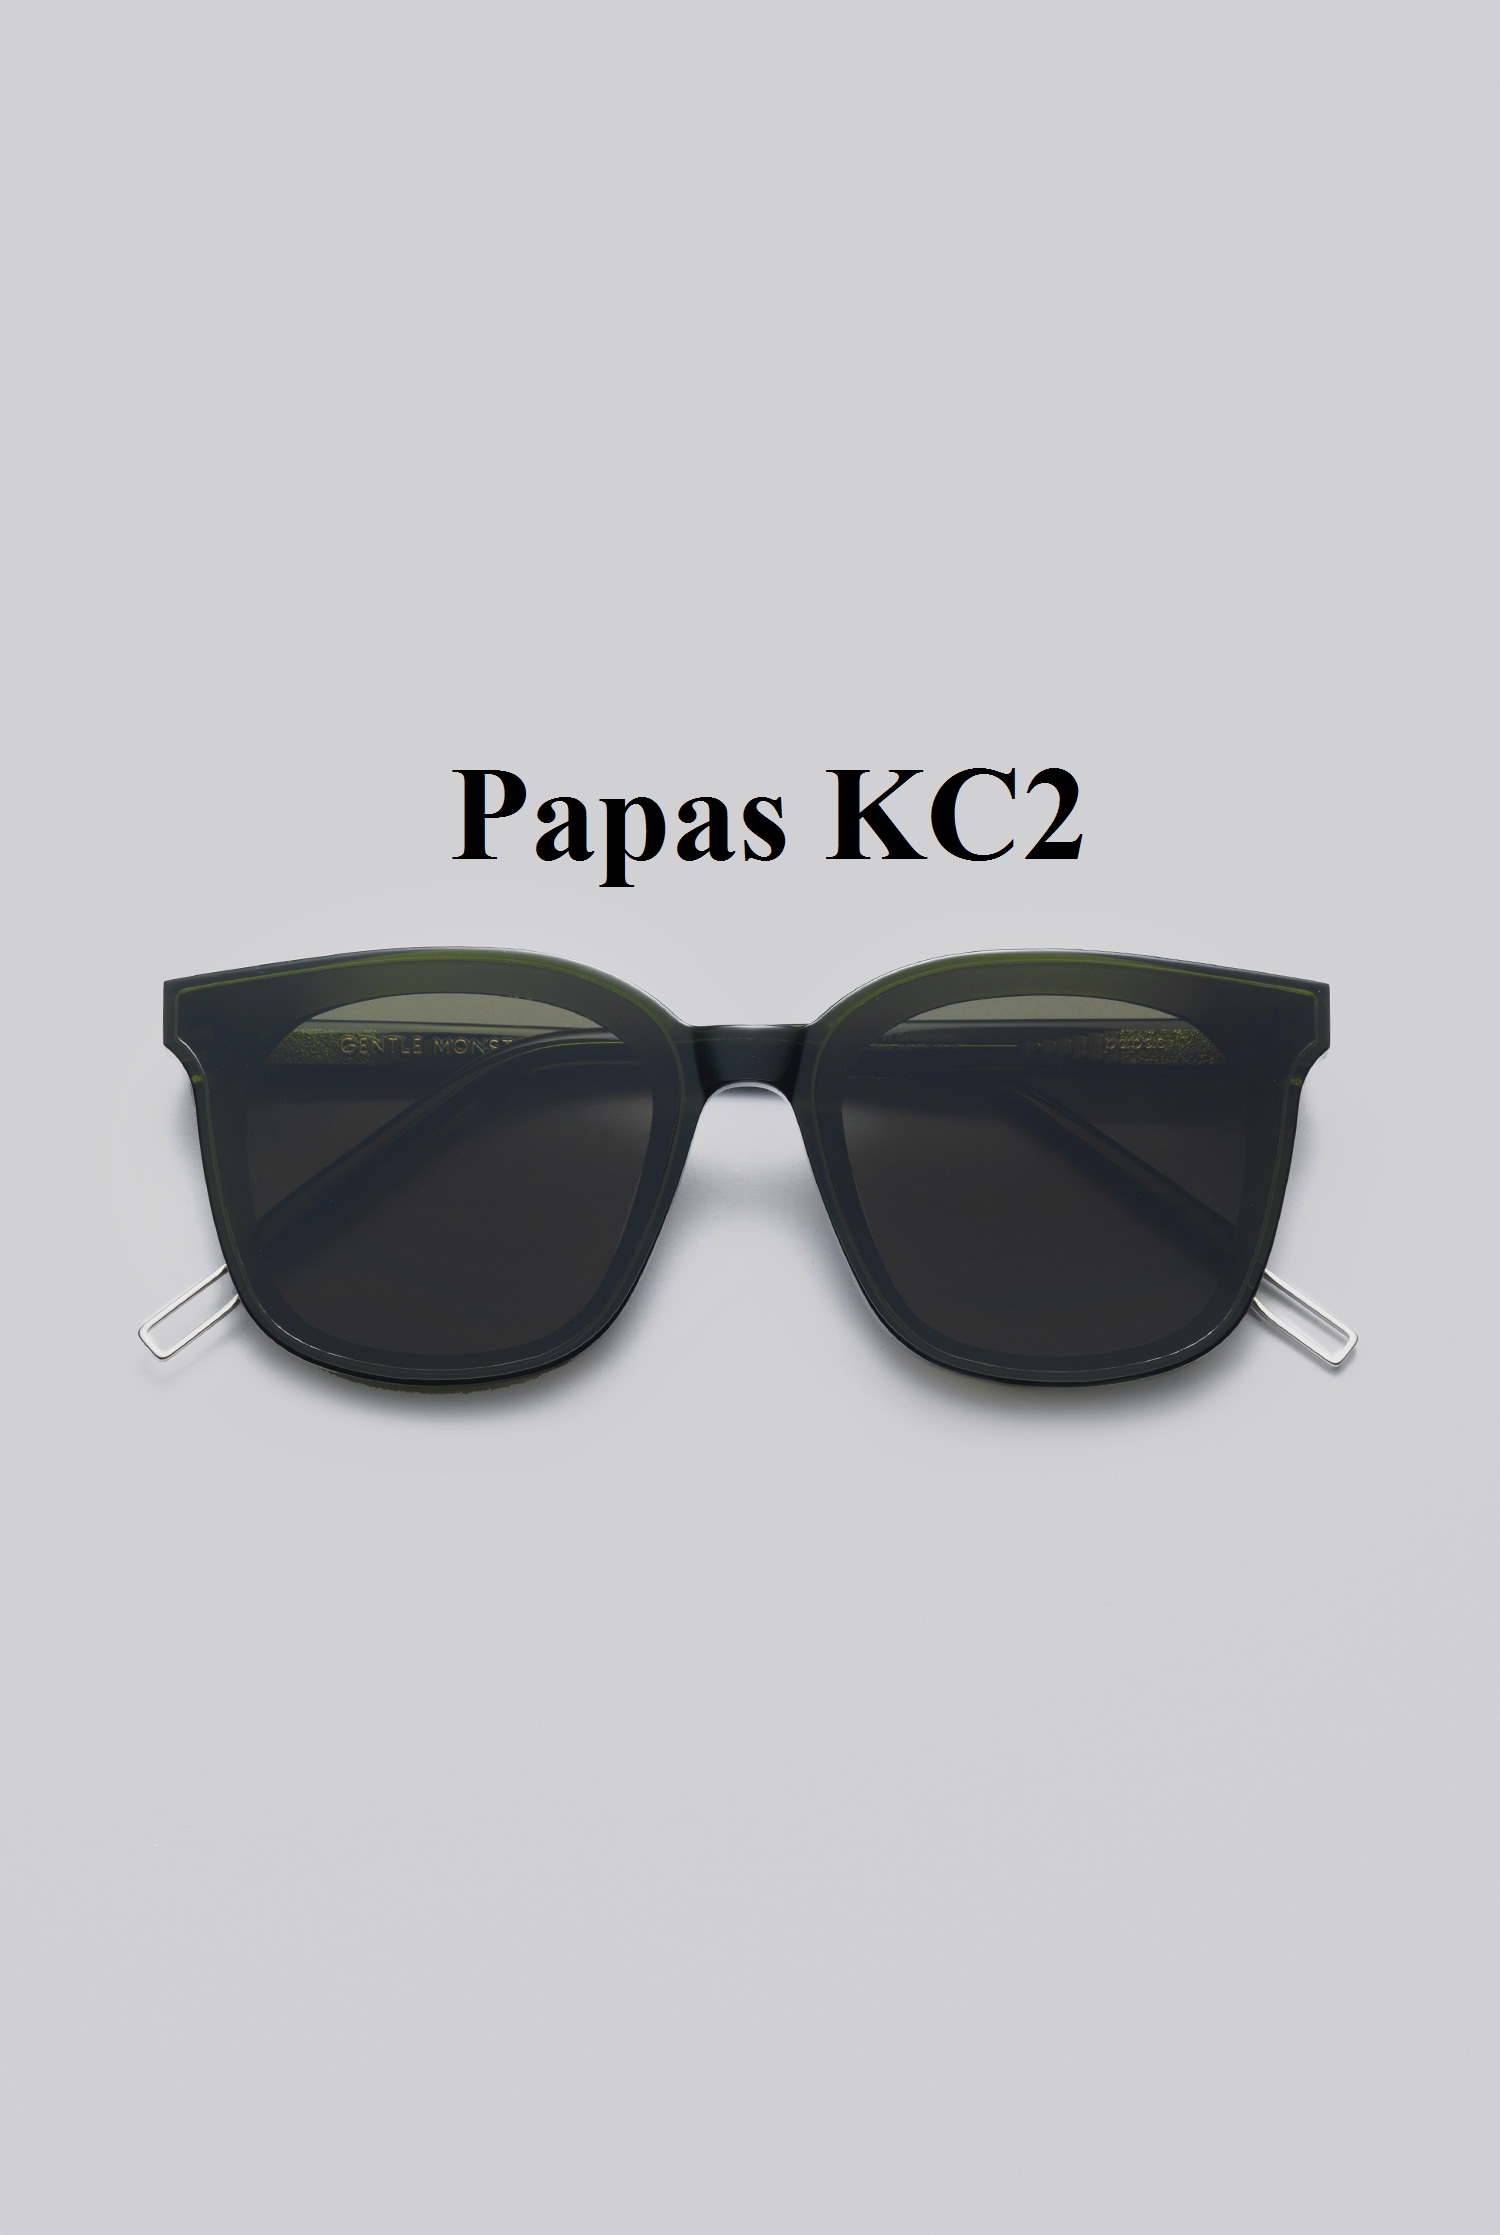 Papas KC2 a